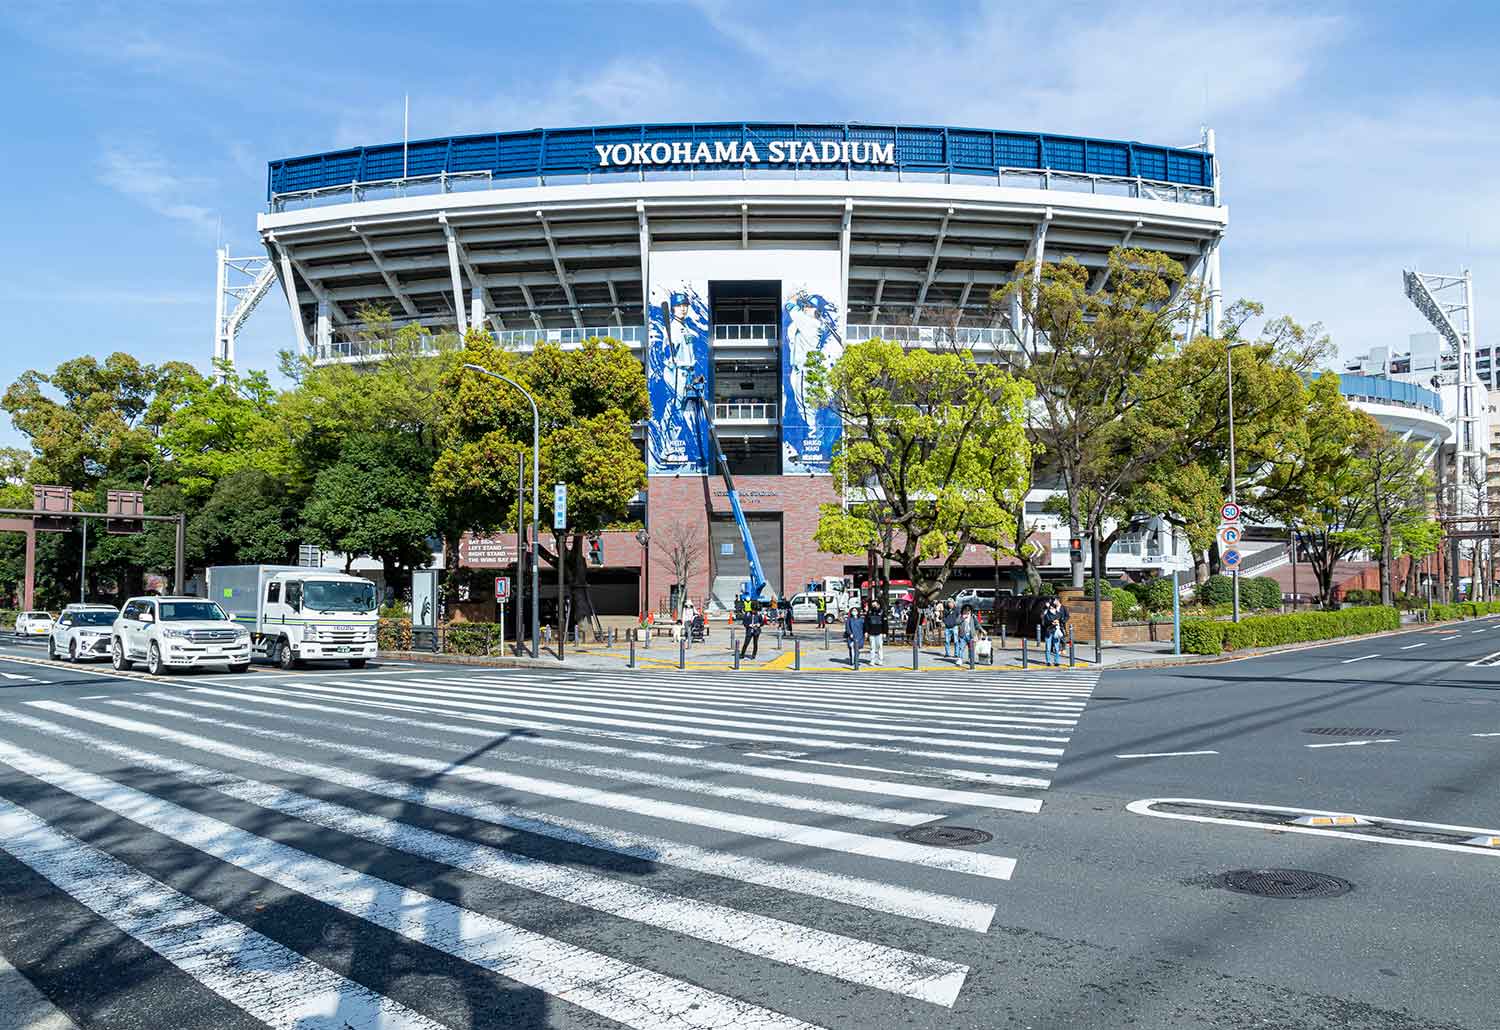 関内駅南口、みなと大通りを挟んでの横浜スタジアム。「この信号で待つのがいい」。